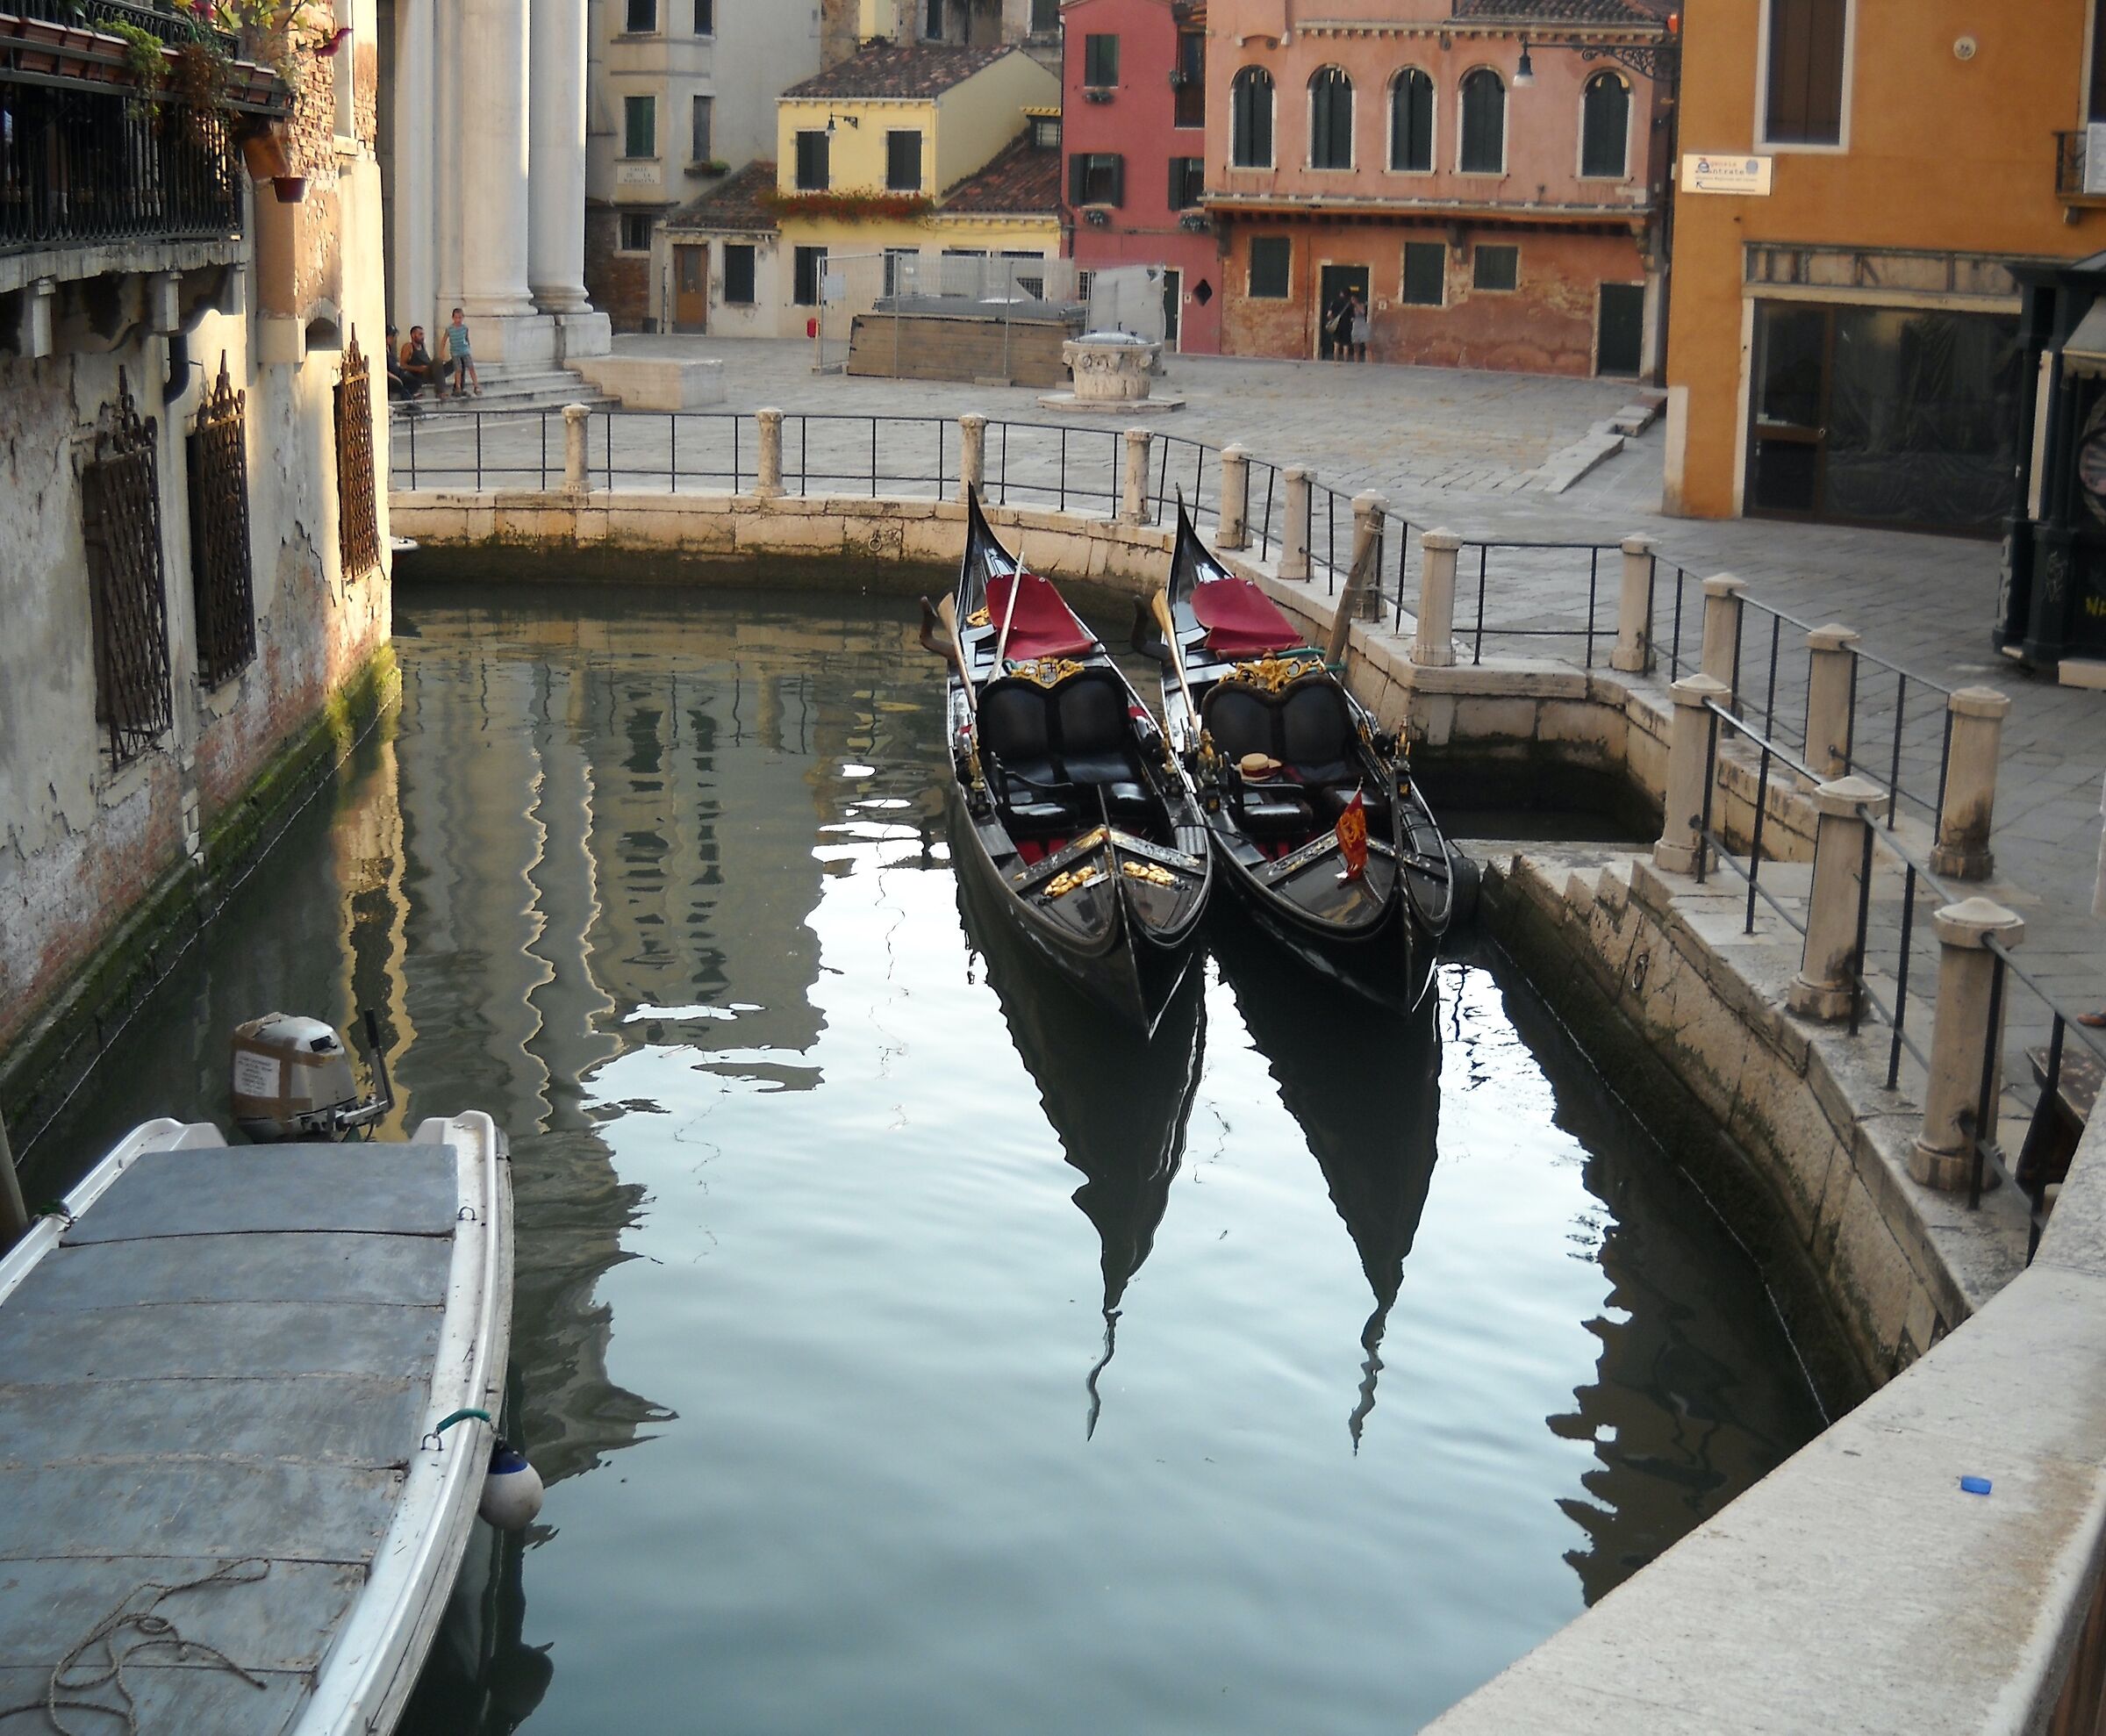 A corner of Venice...